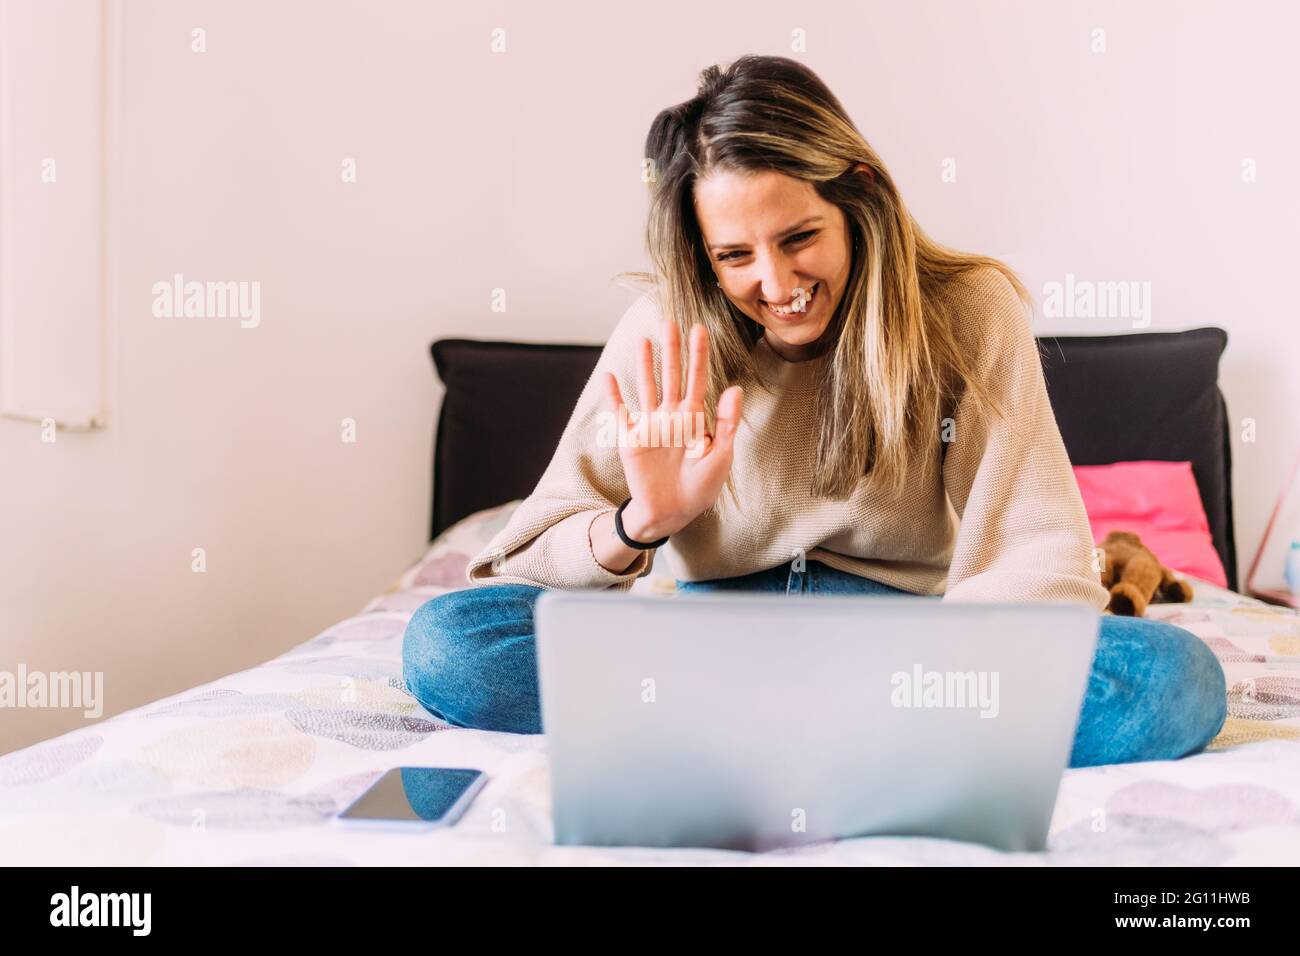 Italia, giovane donna che usa il computer portatile a letto Foto Stock